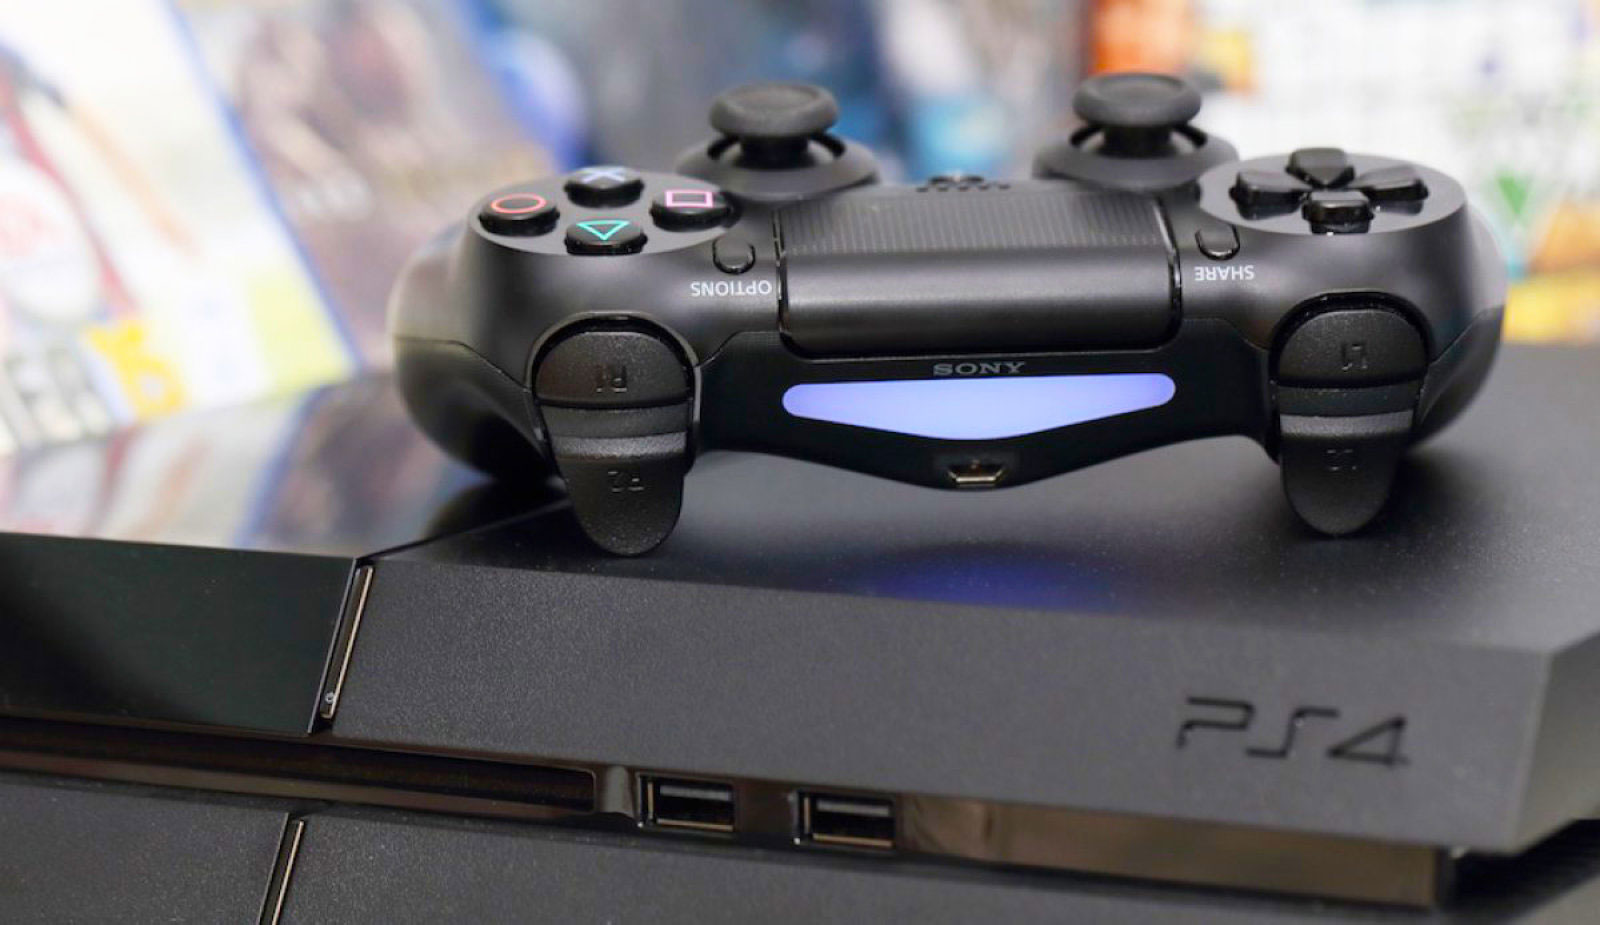 Nowe gry na PS4 i gorące zwiastuny. Podsumowanie konferencji Sony